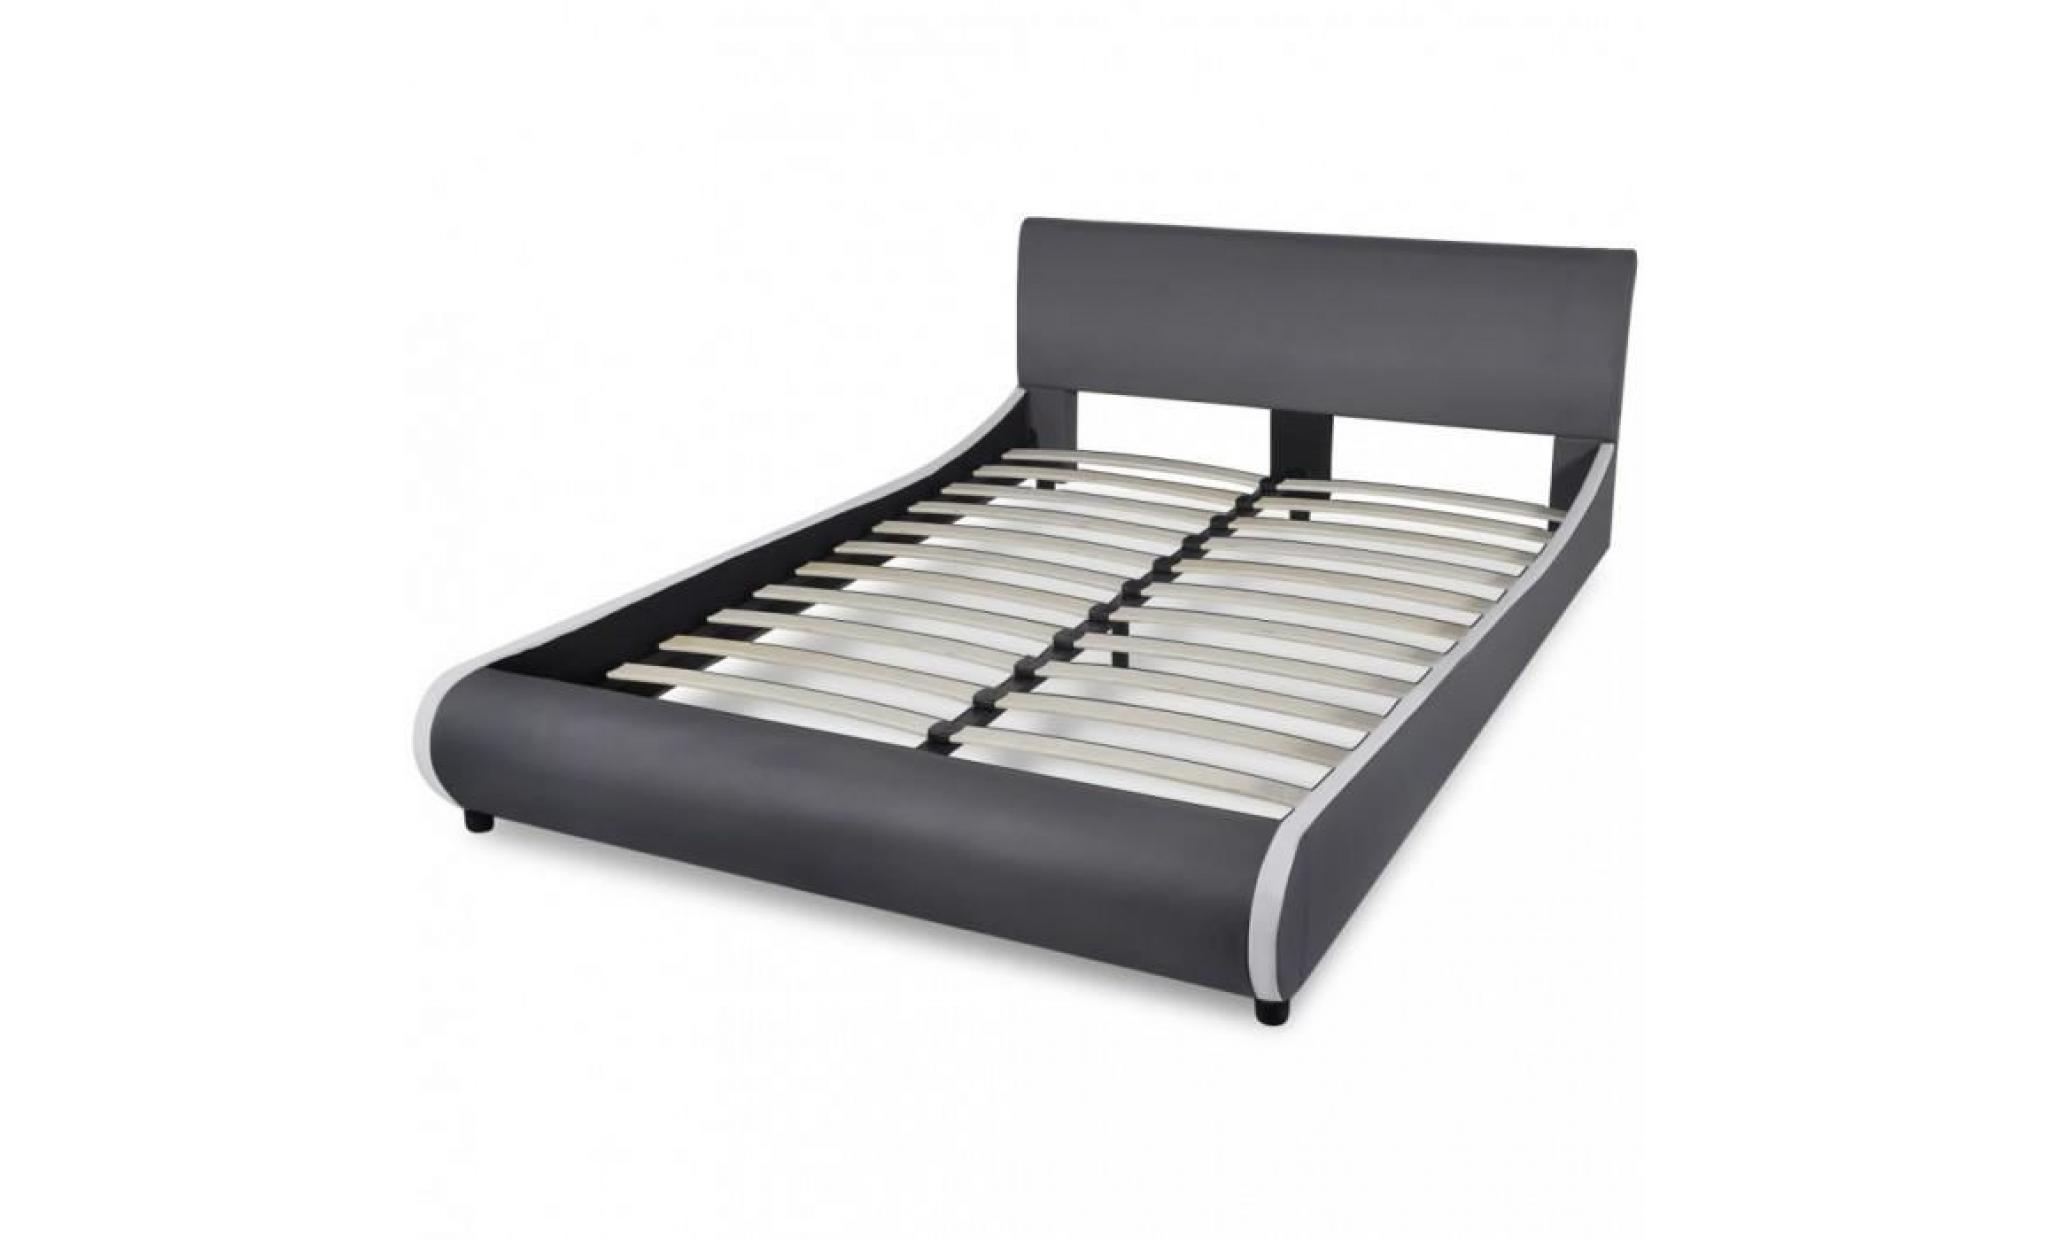 r74 couleur gris pretoria ce lit en cuir artificiel, au design simple mais elegant e